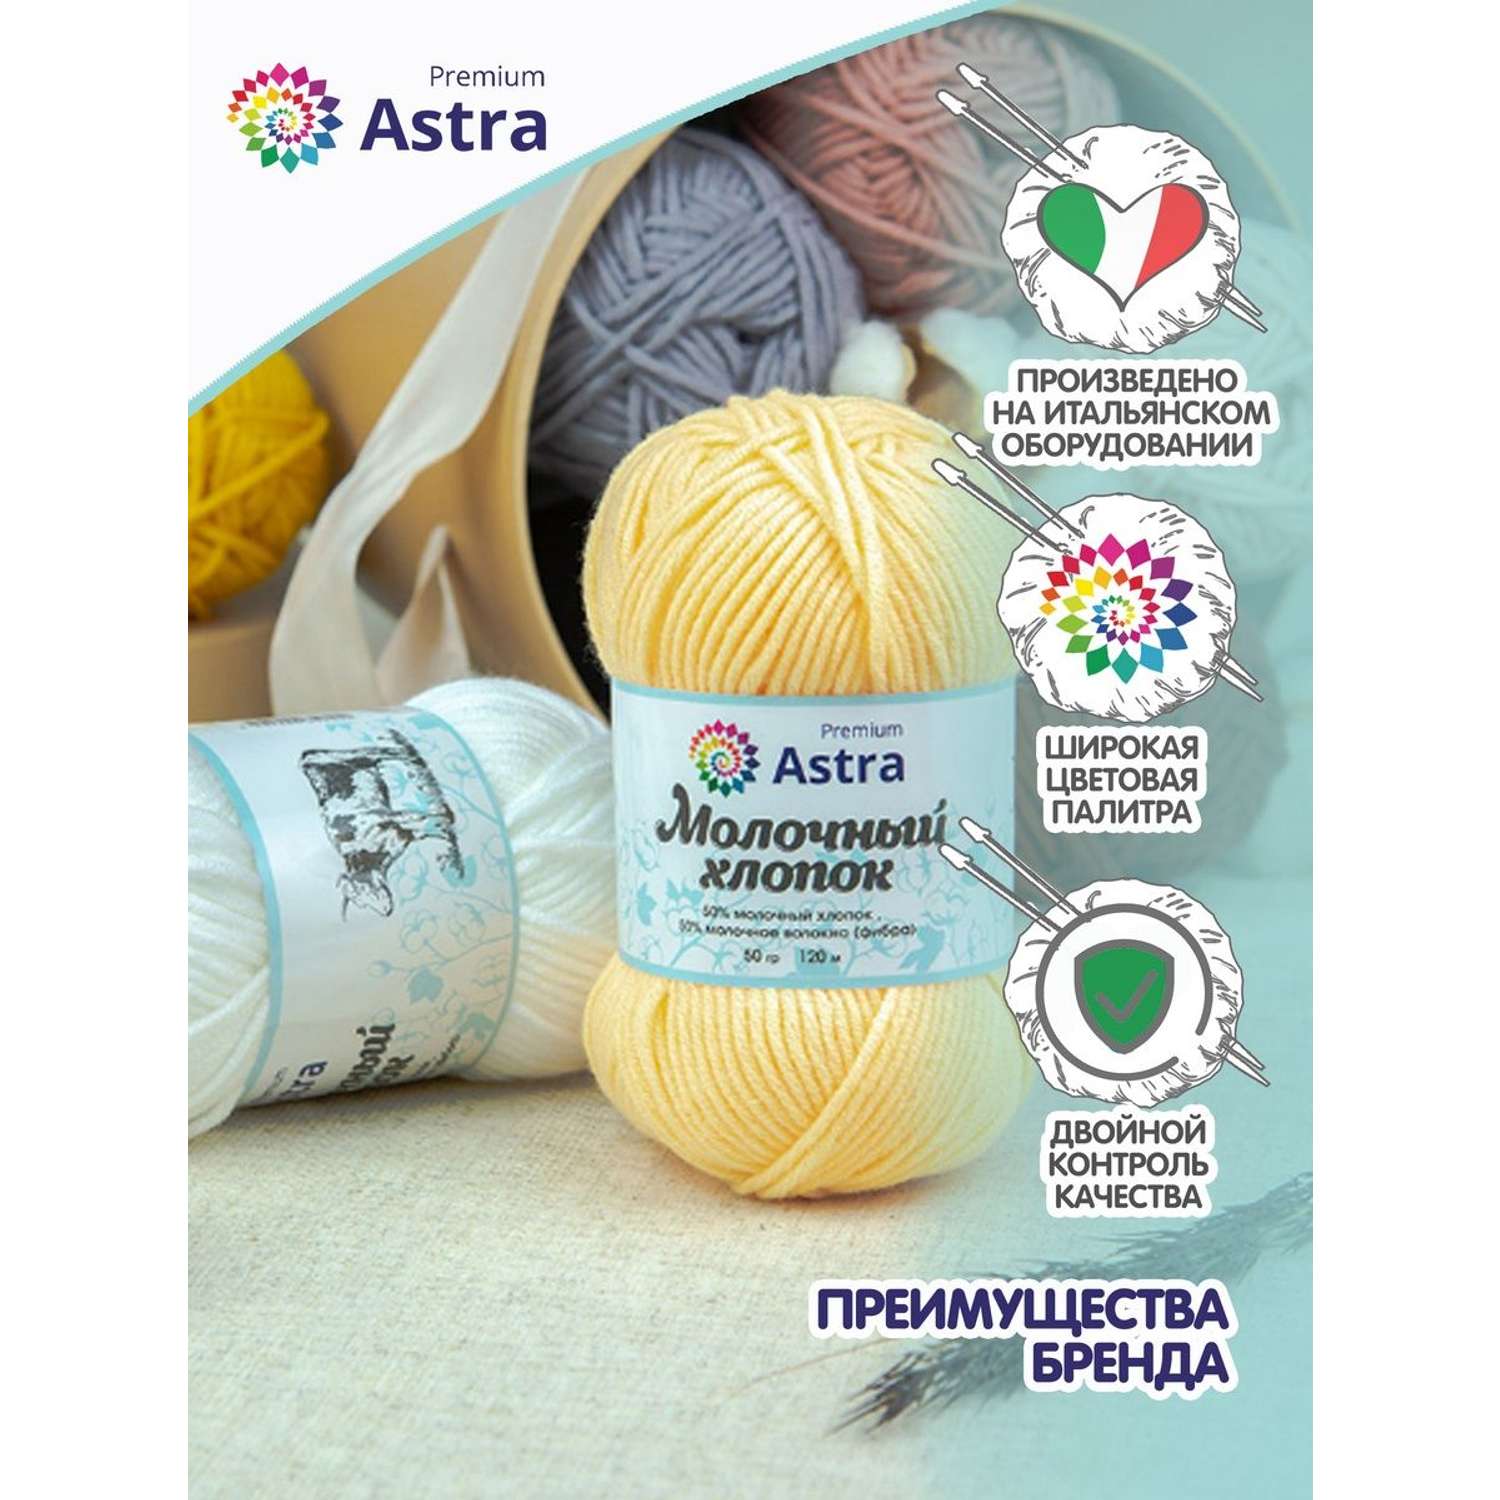 Пряжа для вязания Astra Premium milk cotton хлопок акрил 50 гр 100 м 65 сиреневый 3 мотка - фото 3